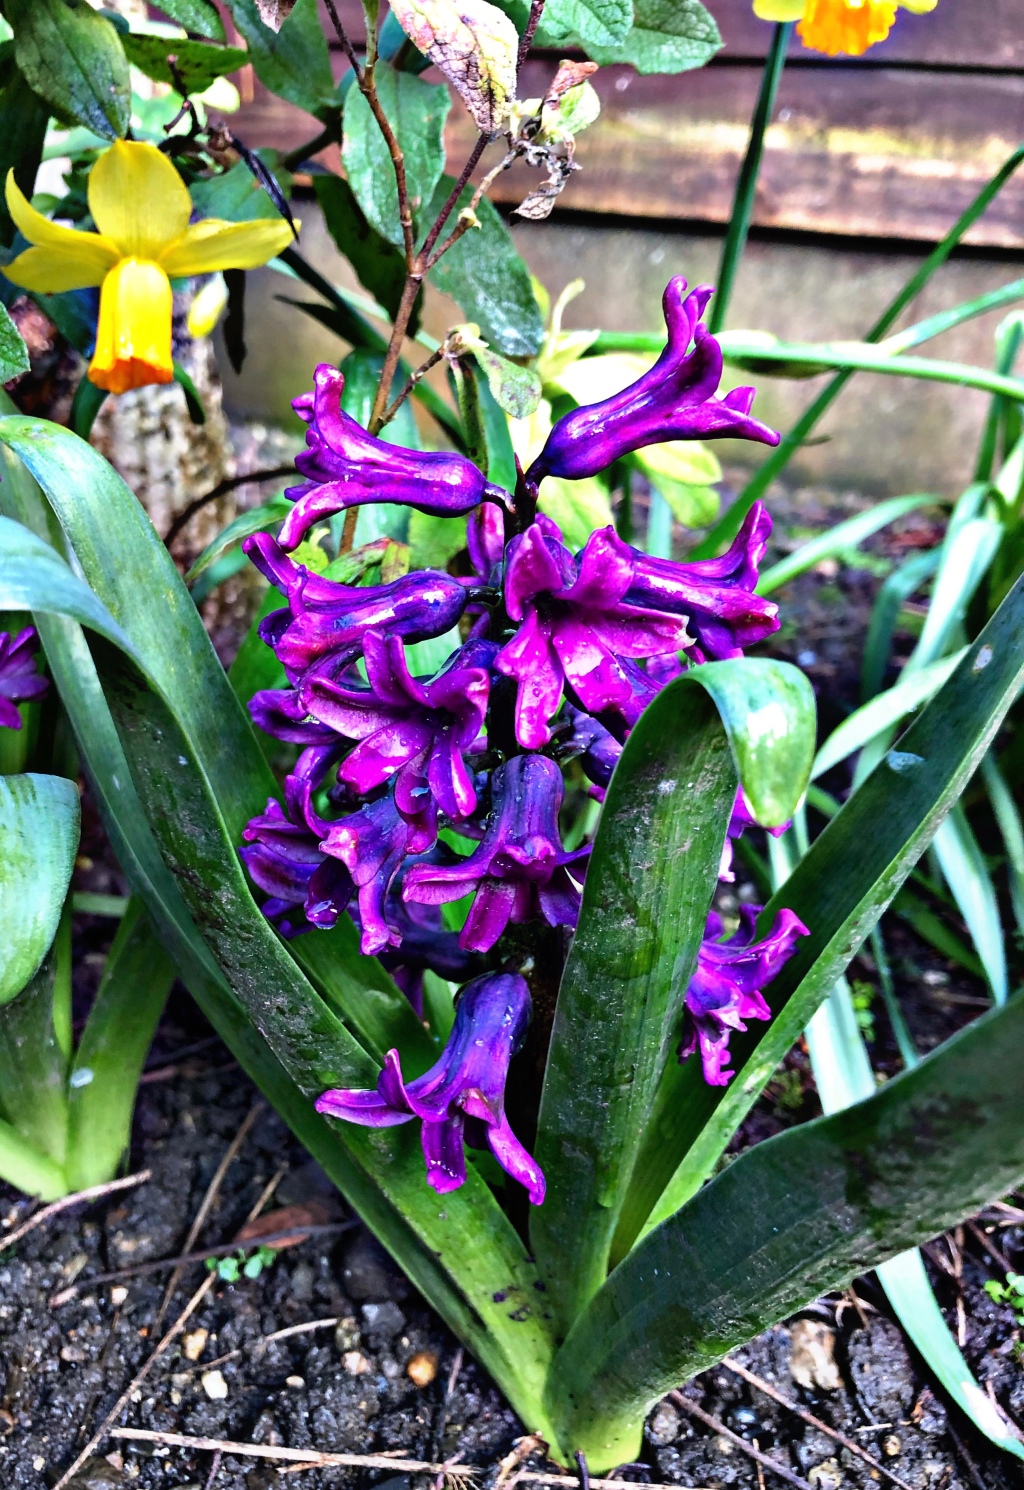 How to Grow Hyacinth Flowers